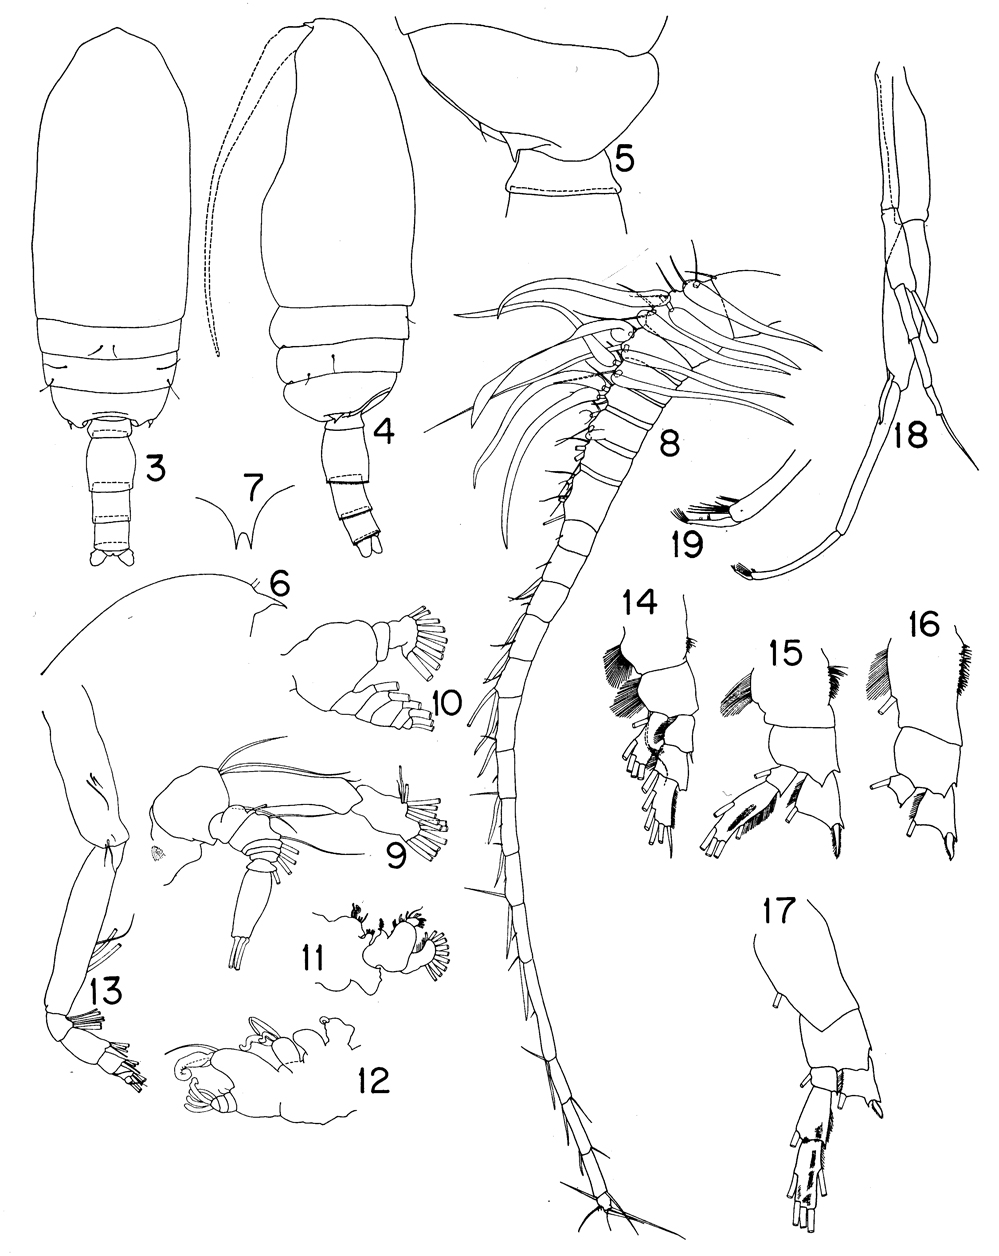 Espce Pseudotharybis magnus - Planche 1 de figures morphologiques